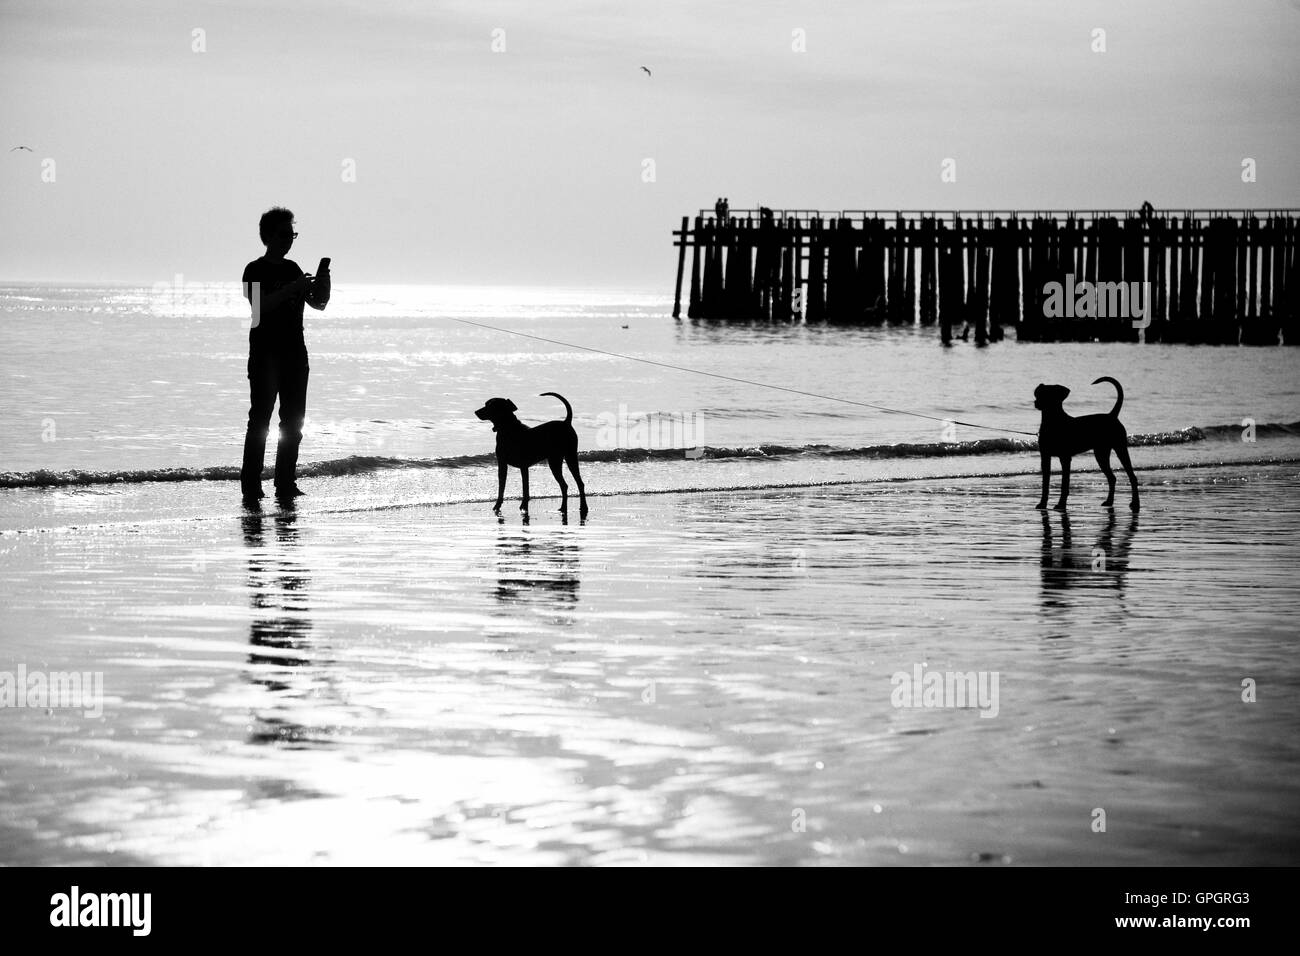 Mann und zwei Hunde am Strand von West Kapelle in Grafik schwarz / weiß  Stockfotografie - Alamy